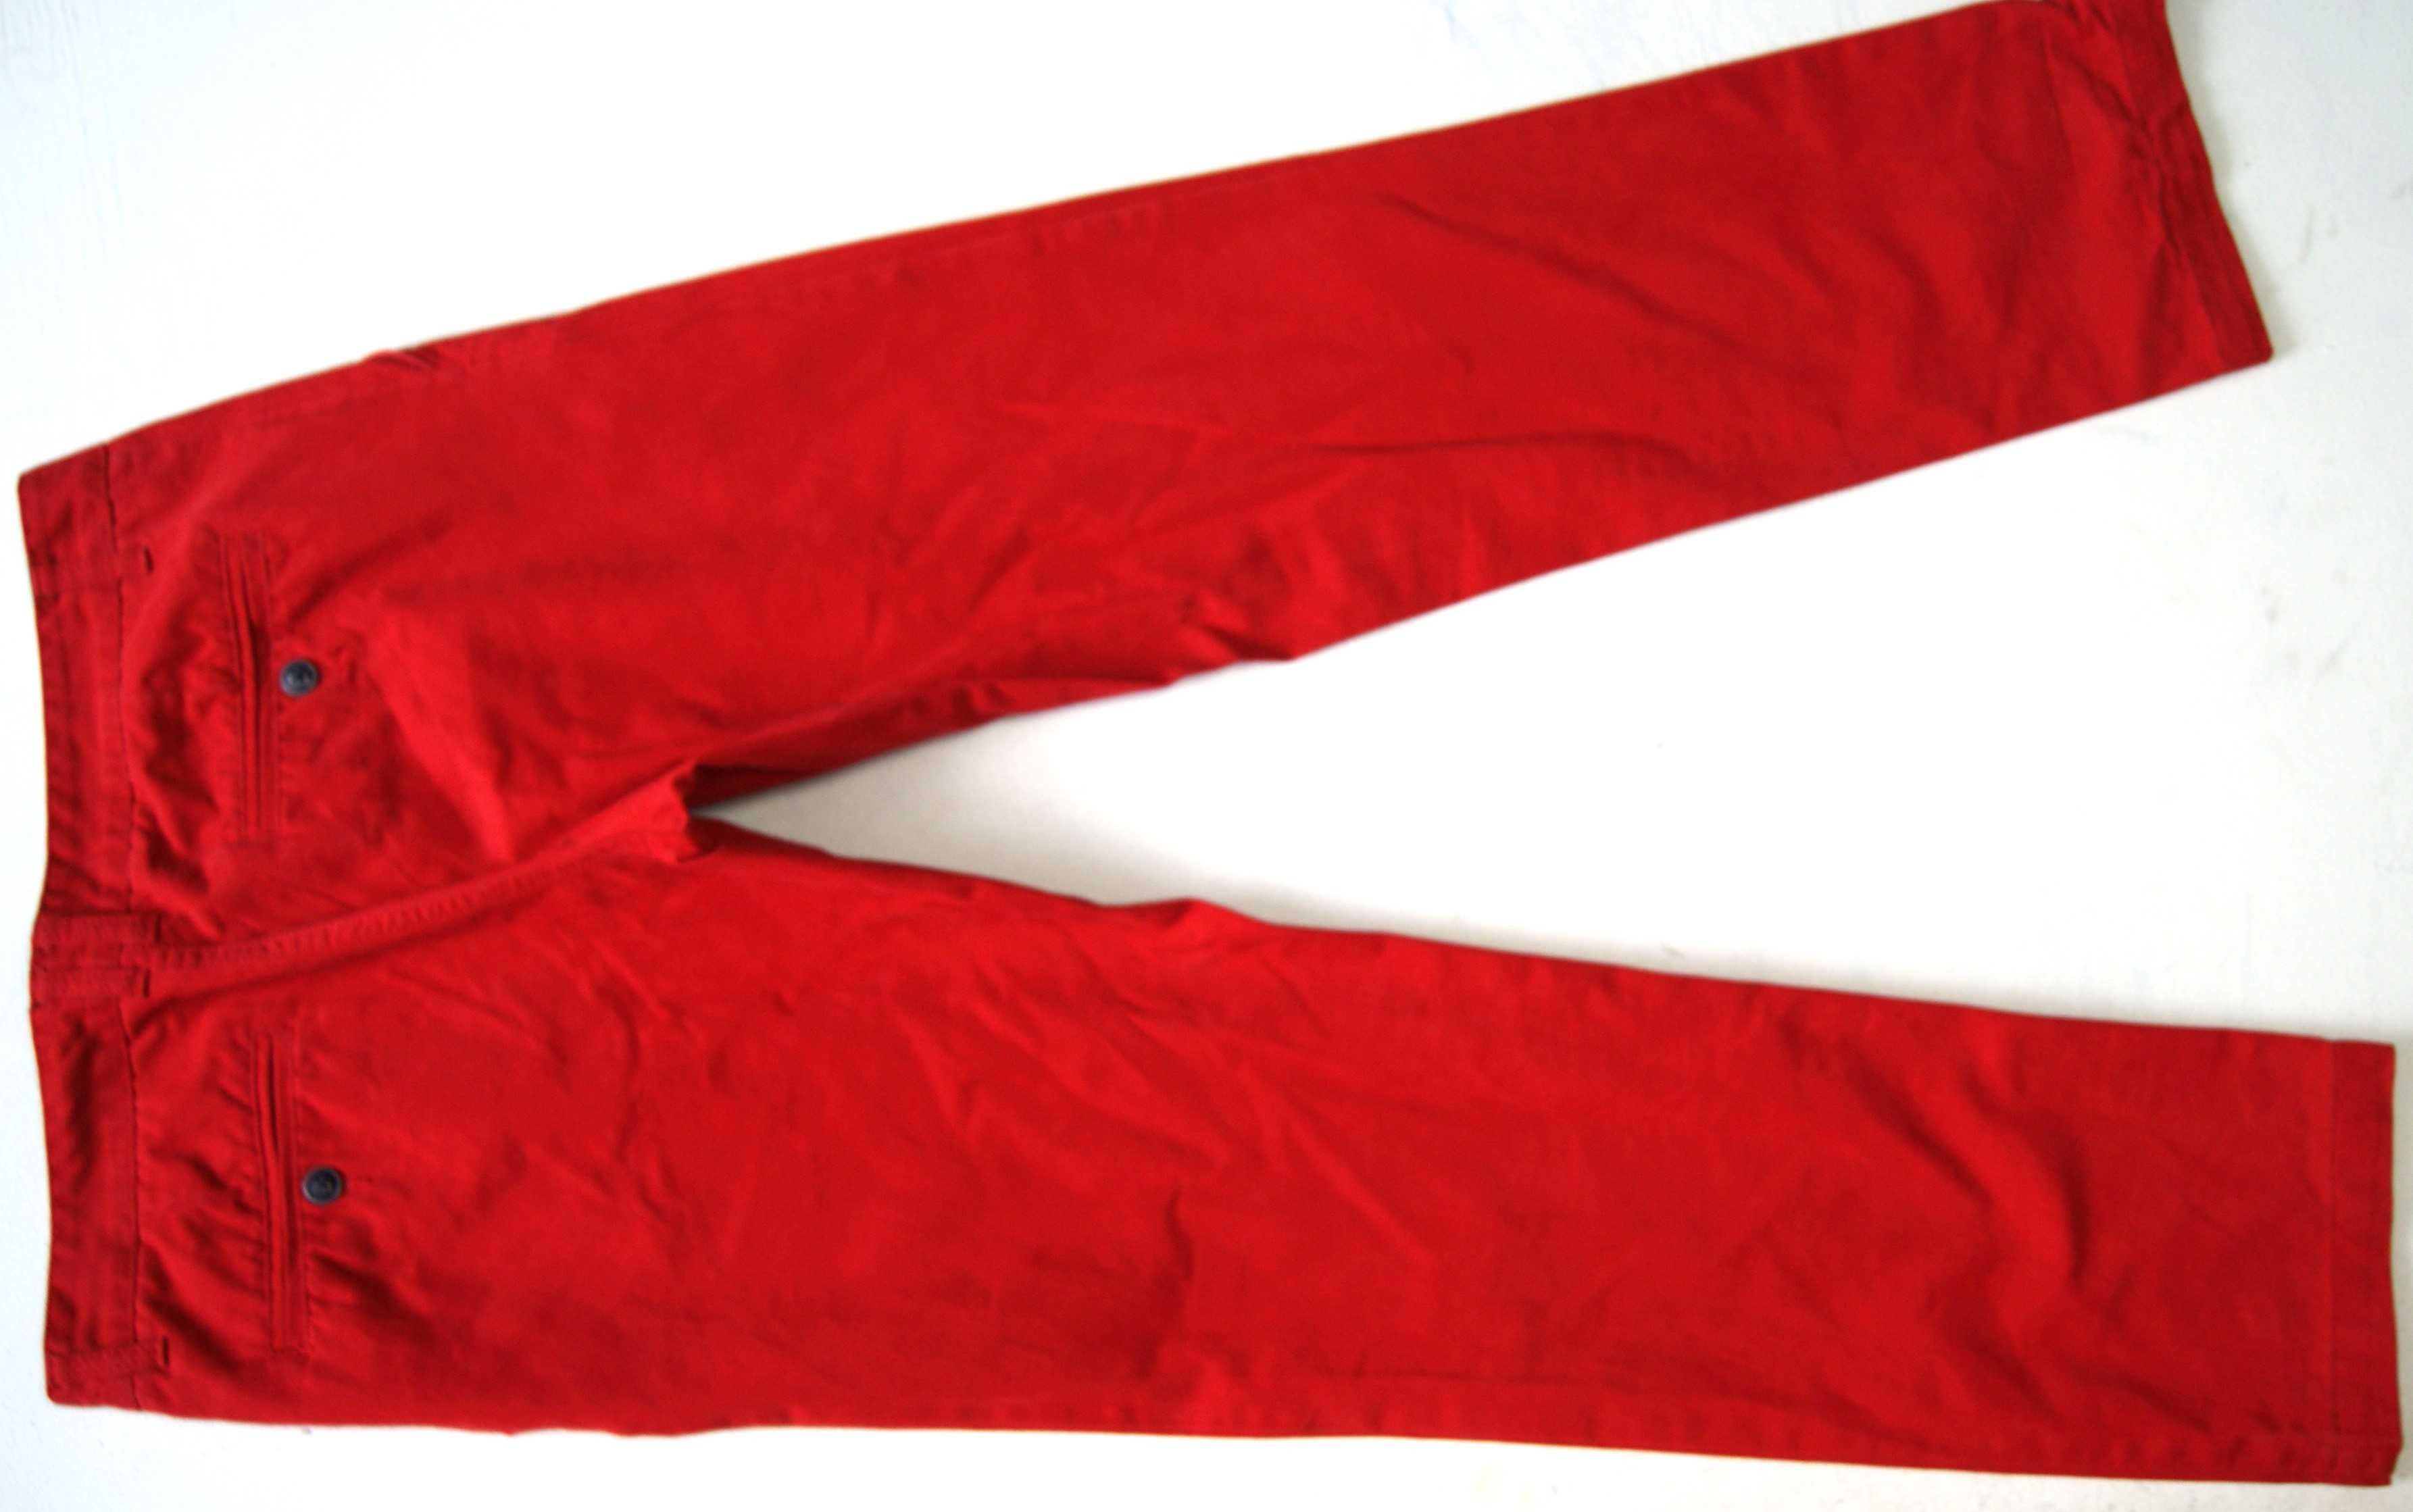 LIVERGY 52 W36 L32 PAS 92 spodnie męskie chino jak nowe